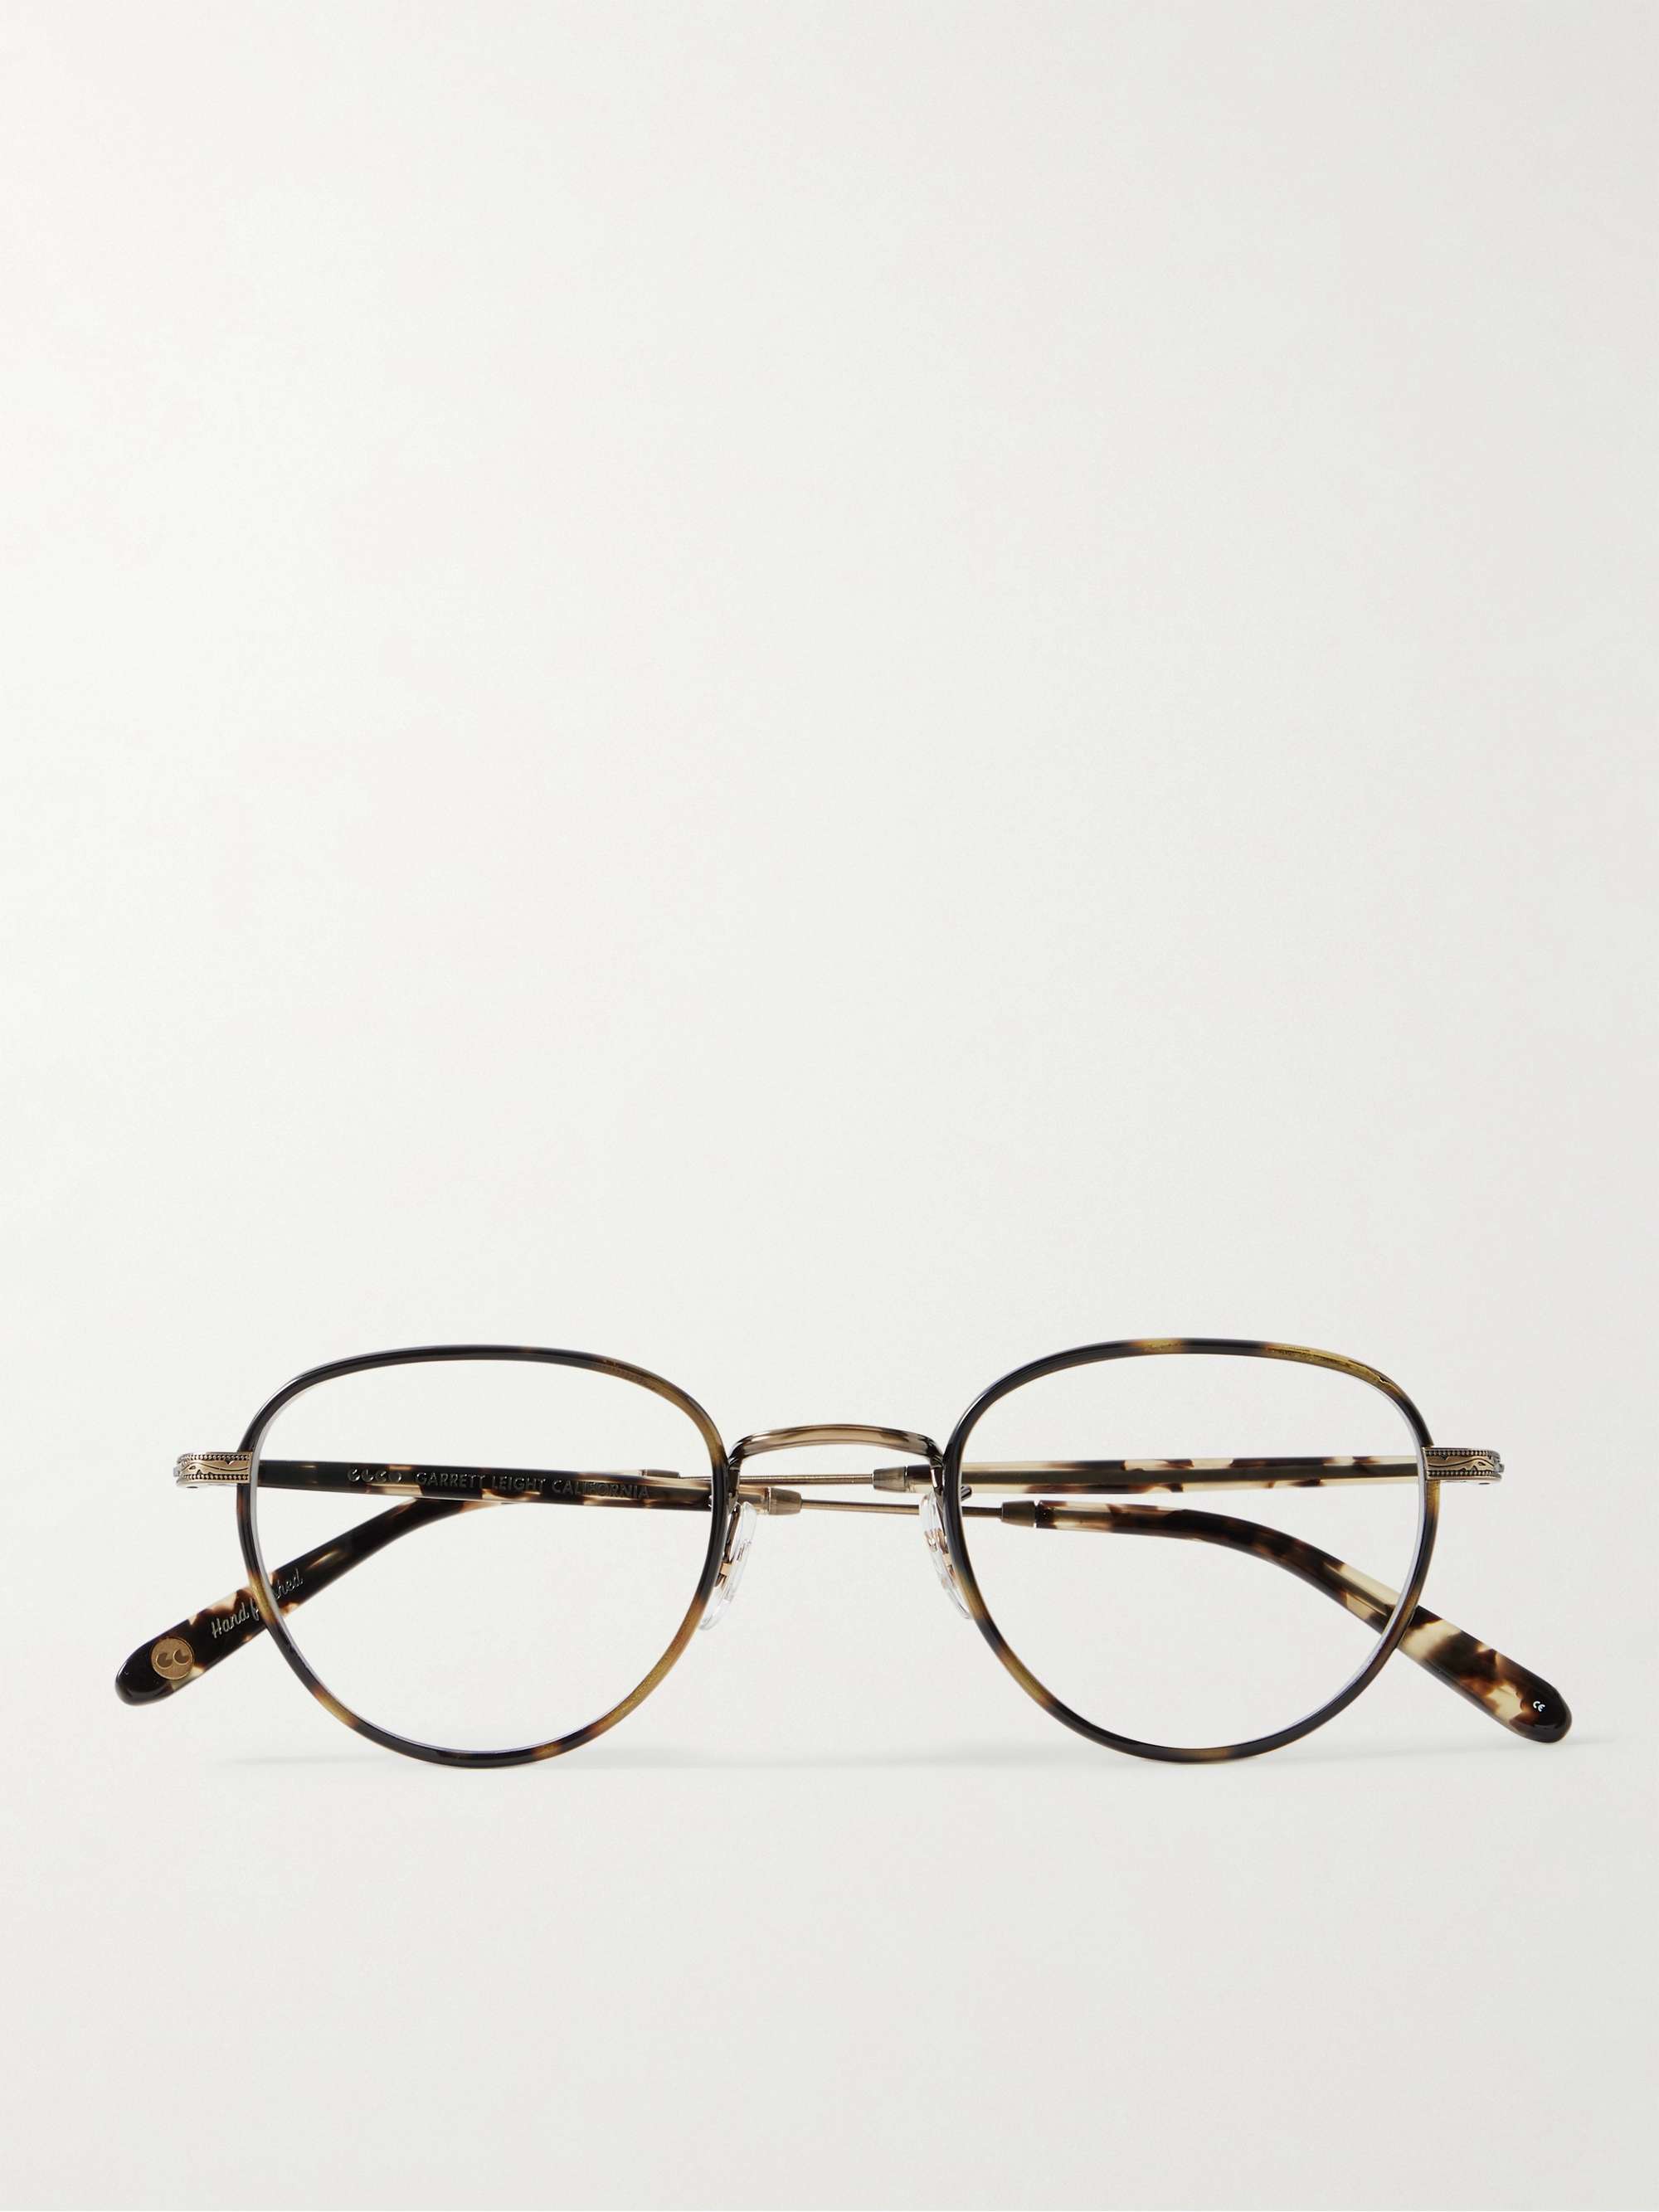 GARRETT LEIGHT CALIFORNIA OPTICAL Wiltern D-Frame Tortoiseshell Acetate Gold-Tone Optical Glasses Men | MR PORTER